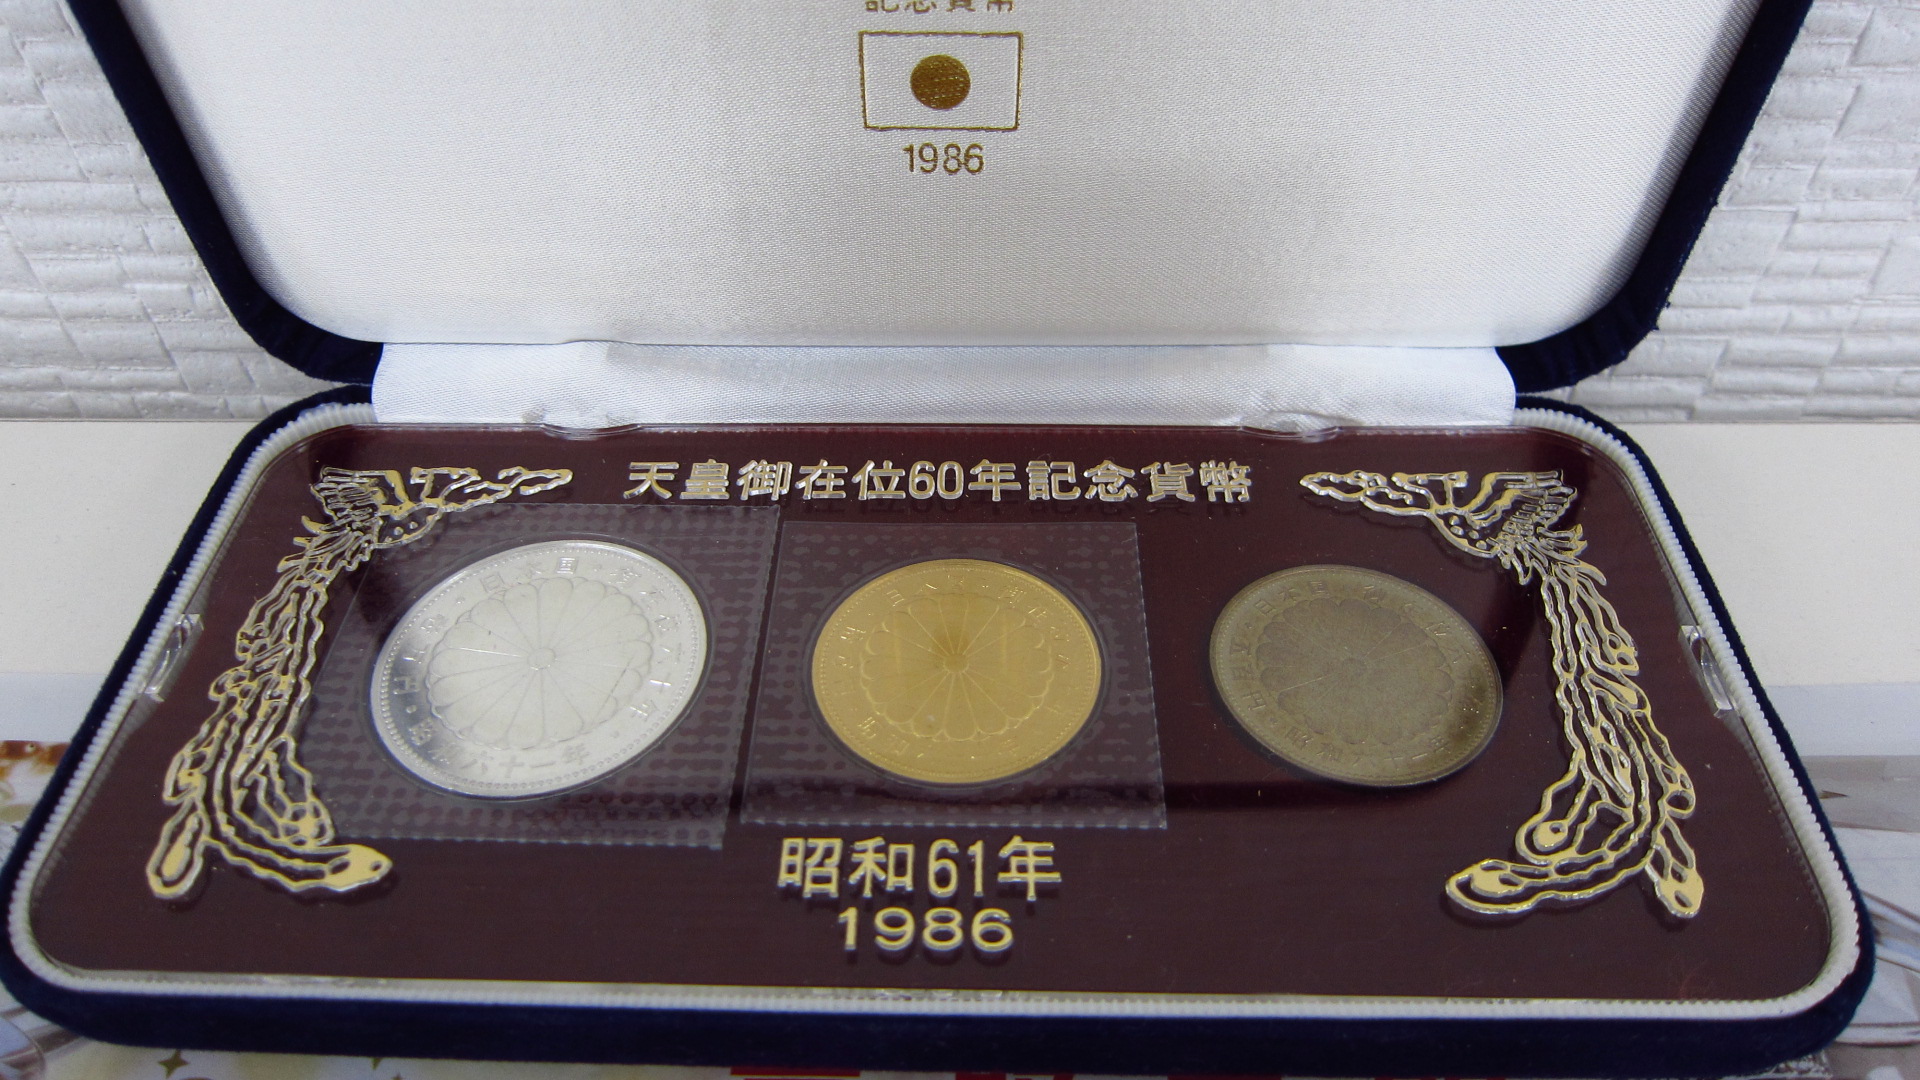 公式 天皇御在位60年記念貨幣 1986 セット 旧貨幣/金貨/銀貨/記念硬貨